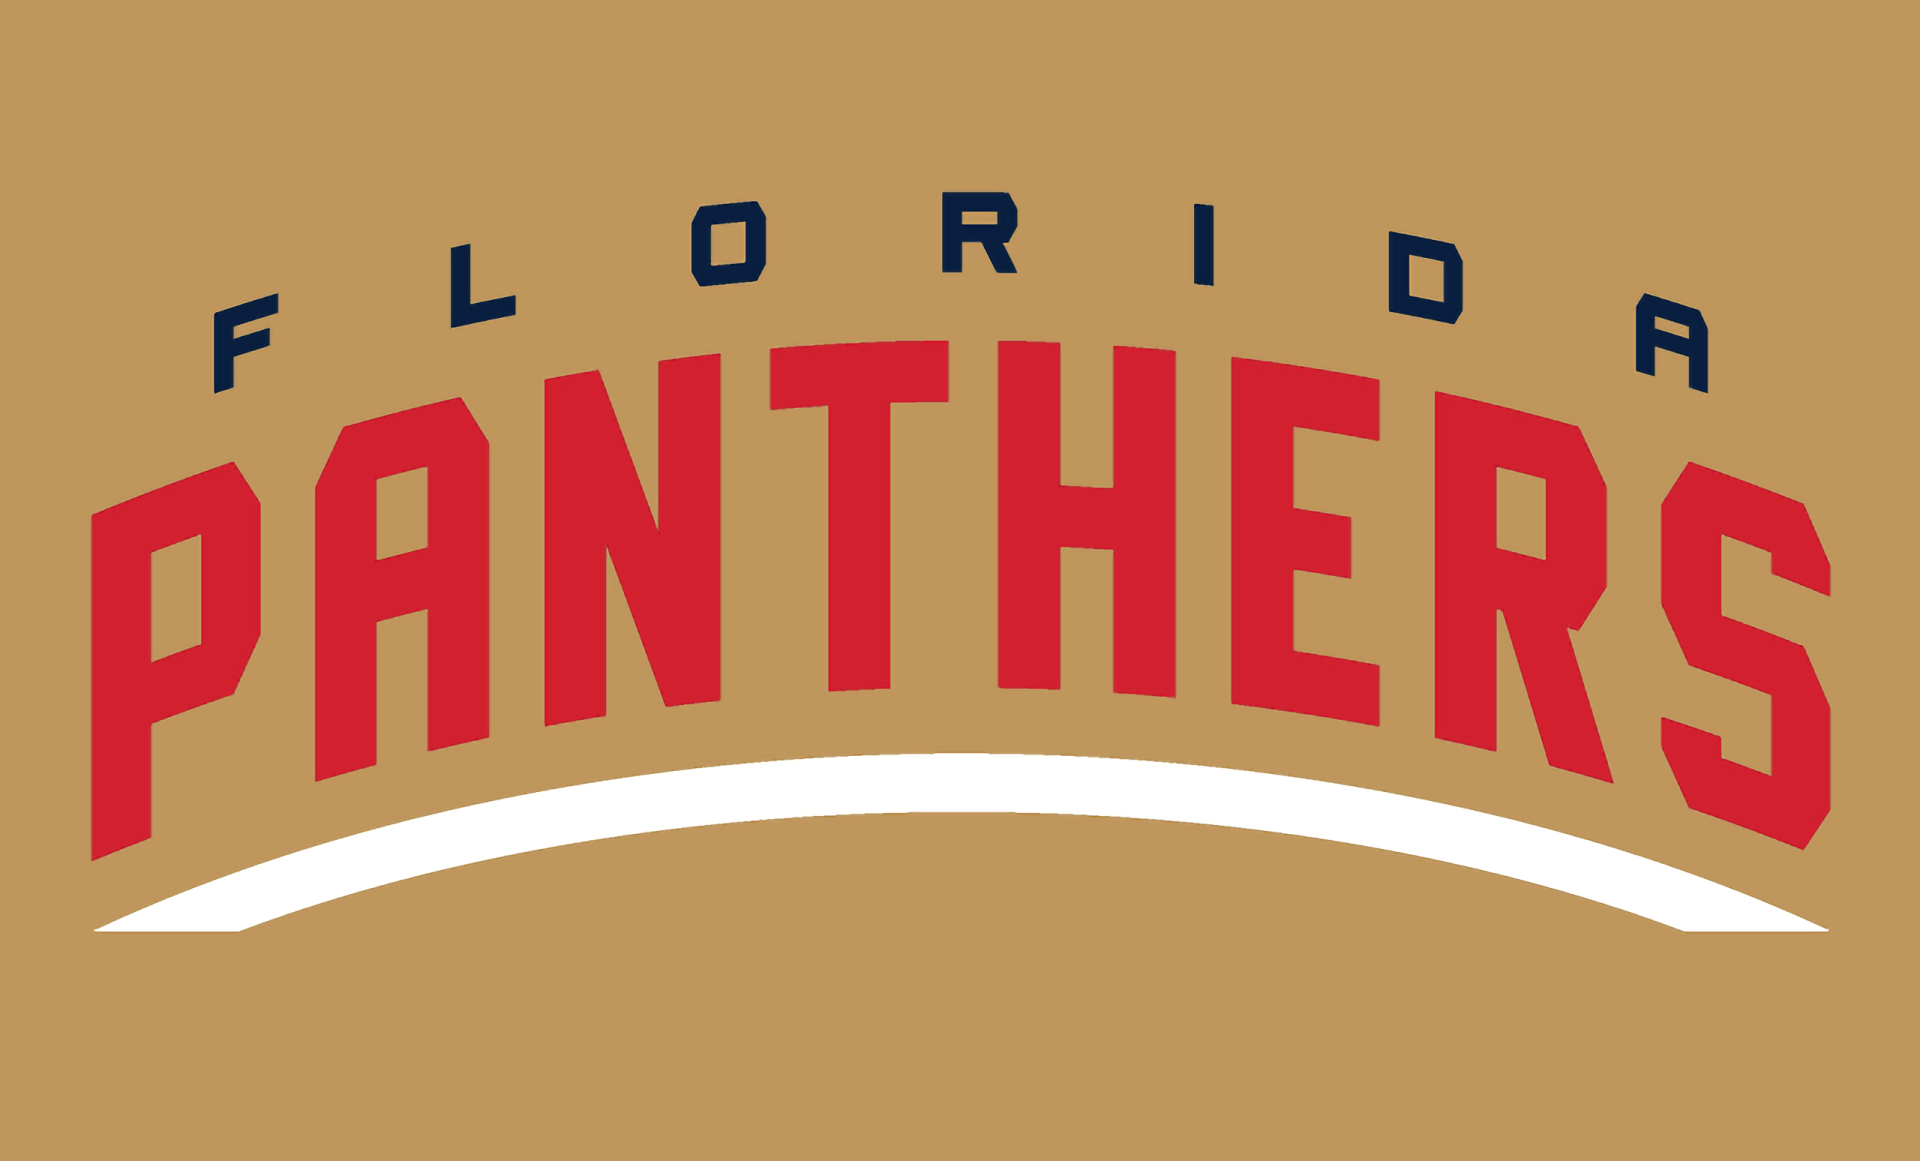 Florida Panthers Wallpapers